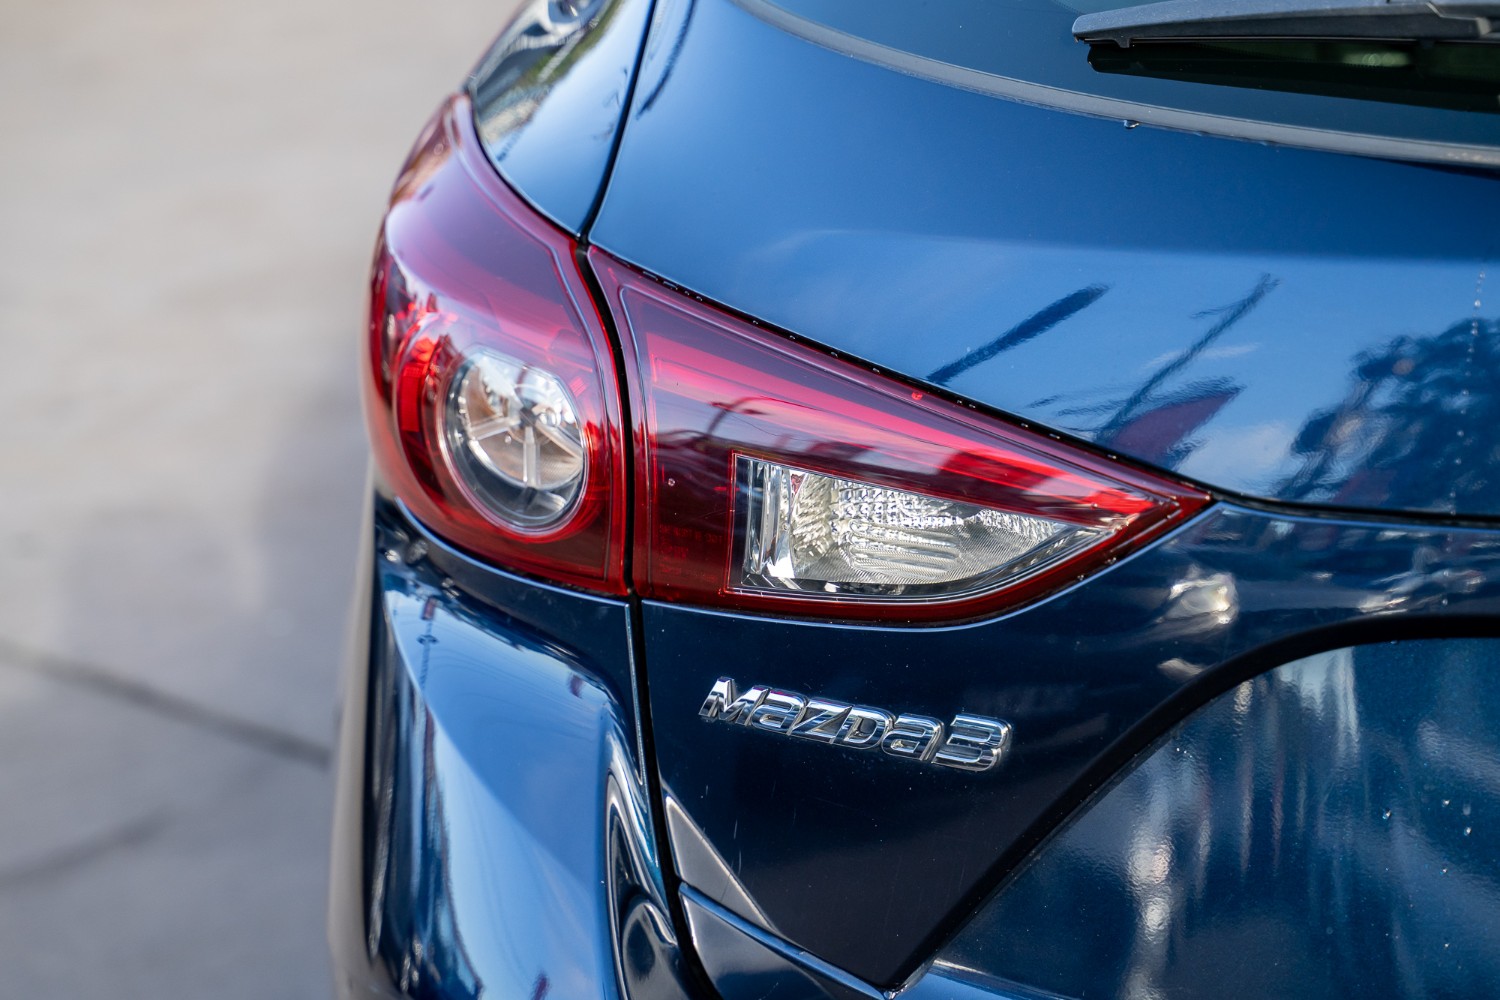 2013 Mazda 3 Hatchback Image 24